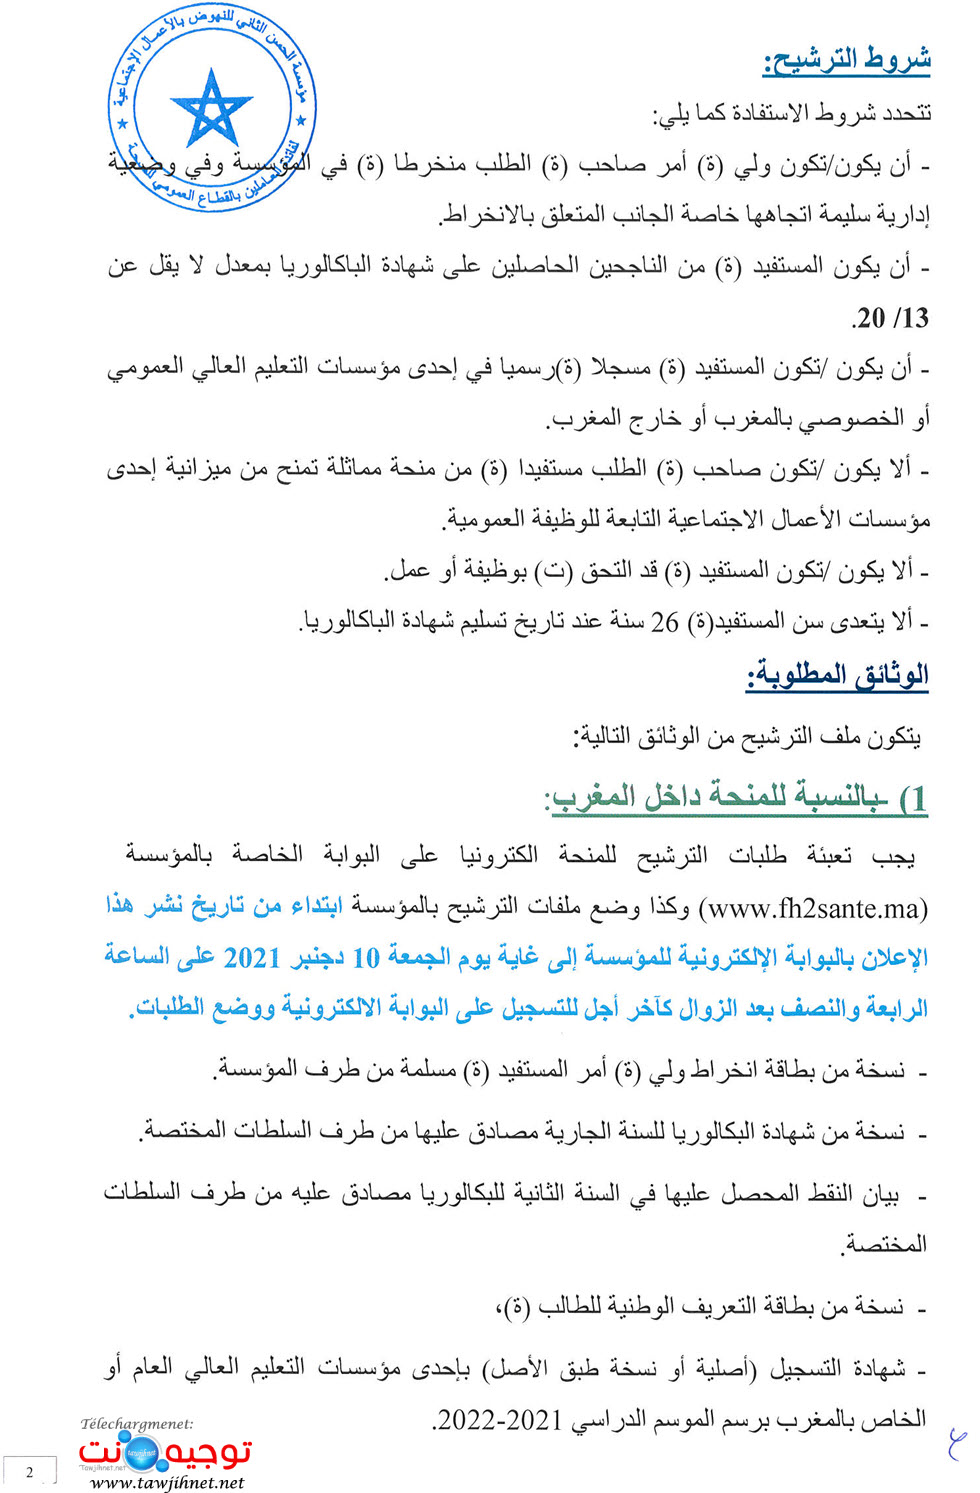 Bourse-FH2sante-2021-Fondation-Hassan II-oeuvres sociales-santé_Page_2.jpg